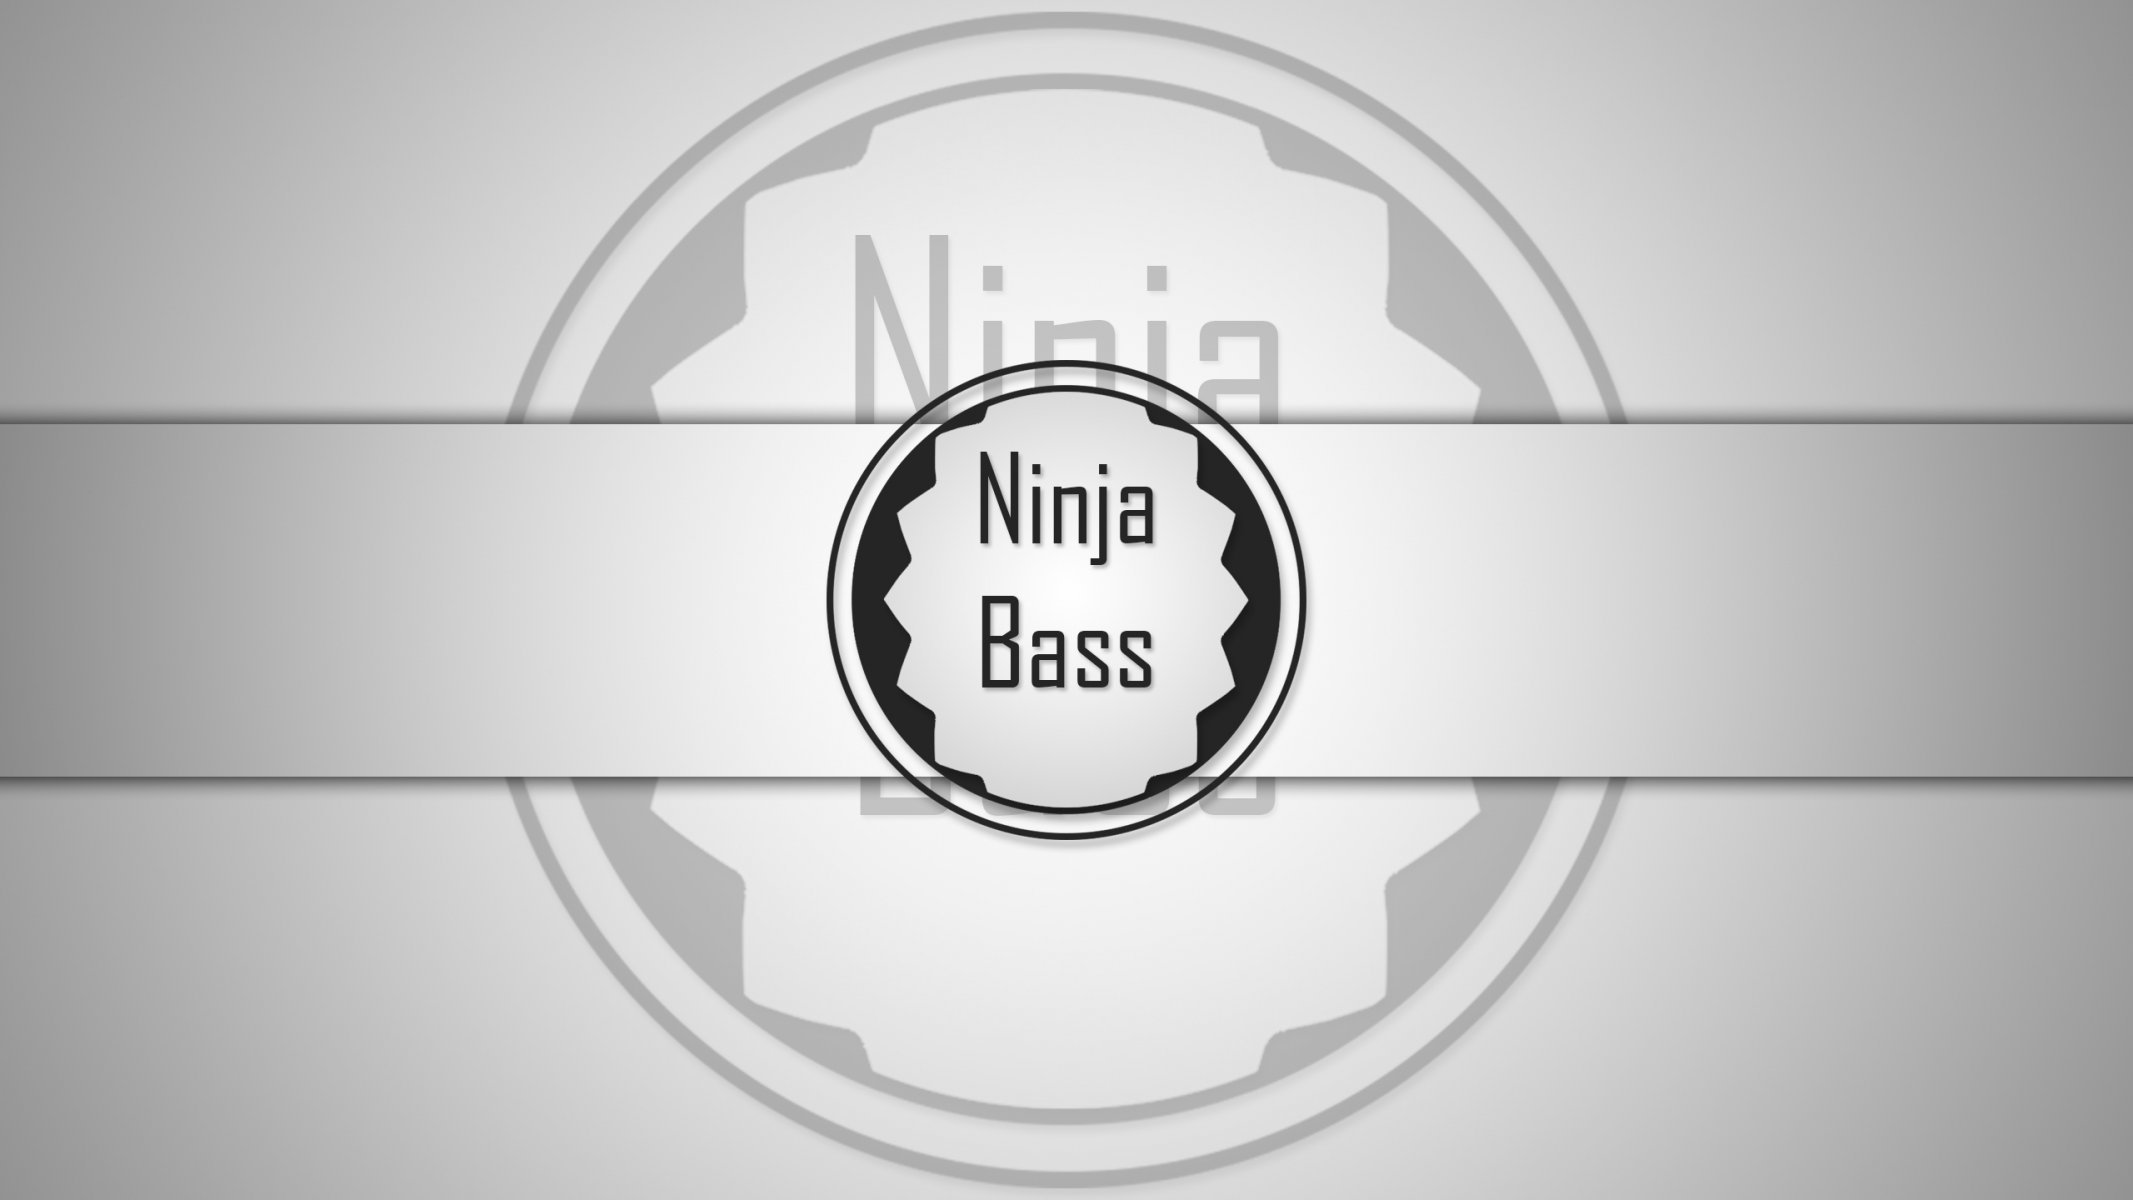 Ninja Bass Pics, Music Collection